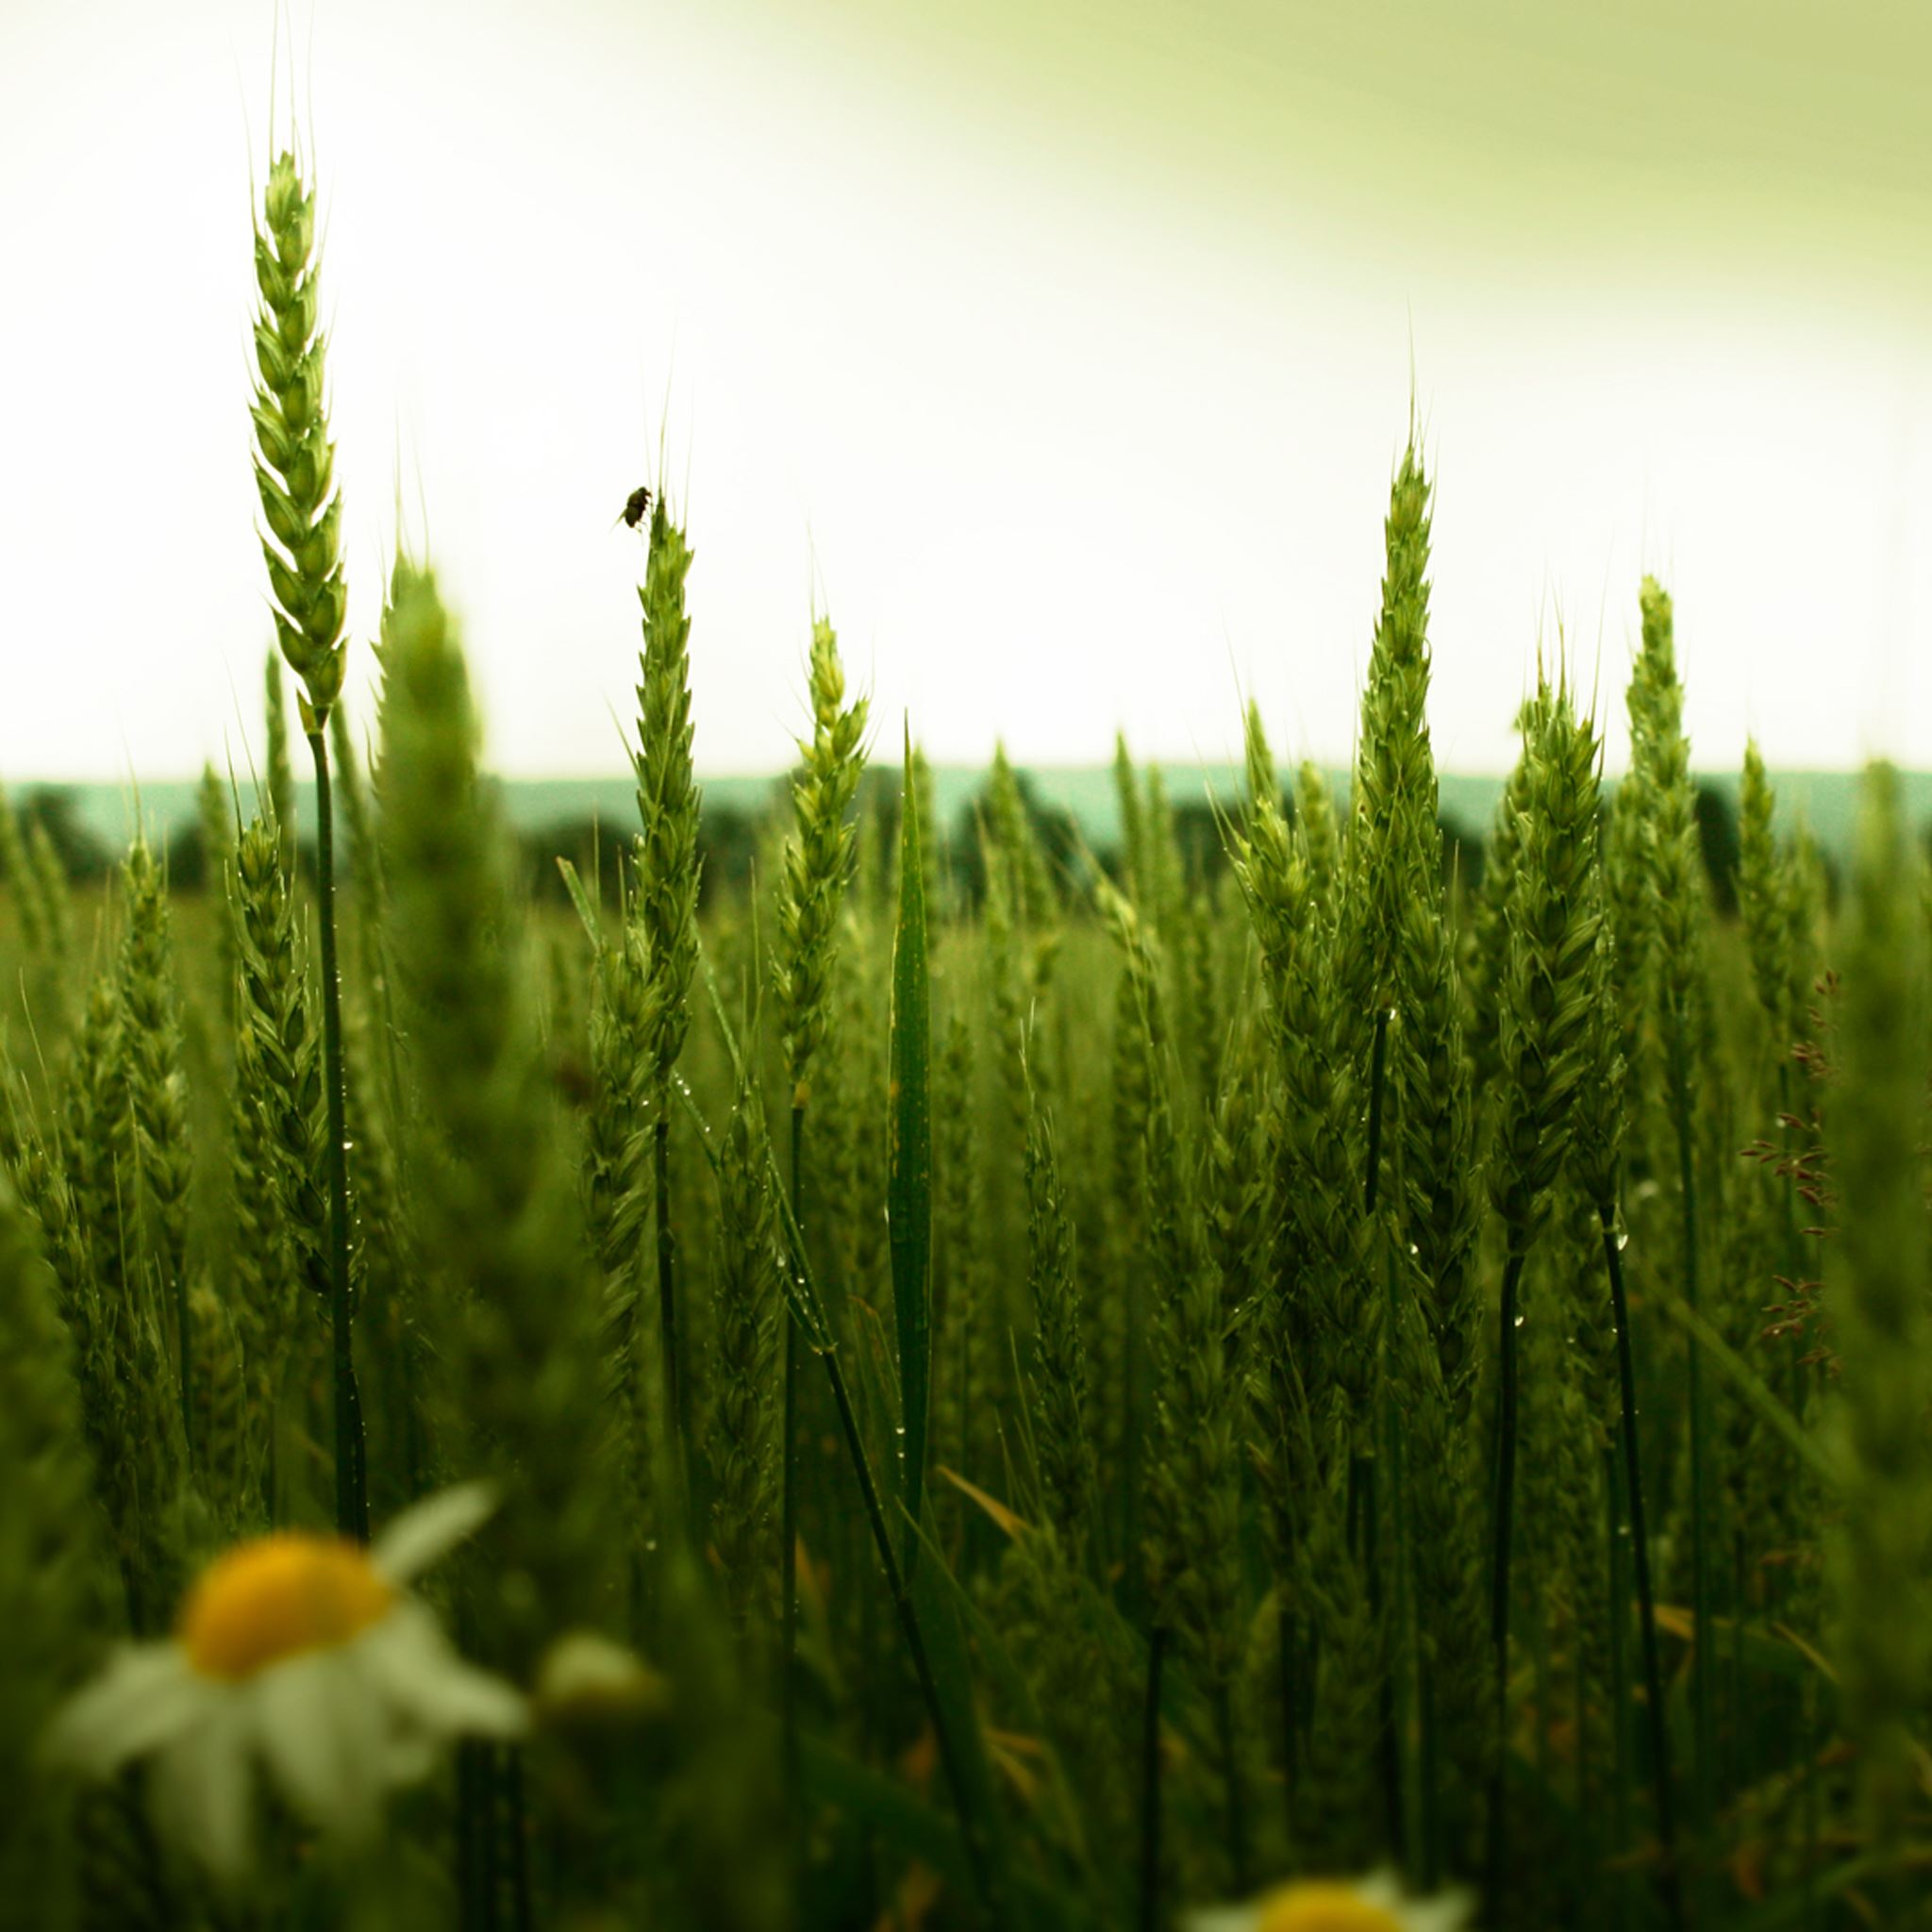 Green Wheat Field iPad Air wallpaper 